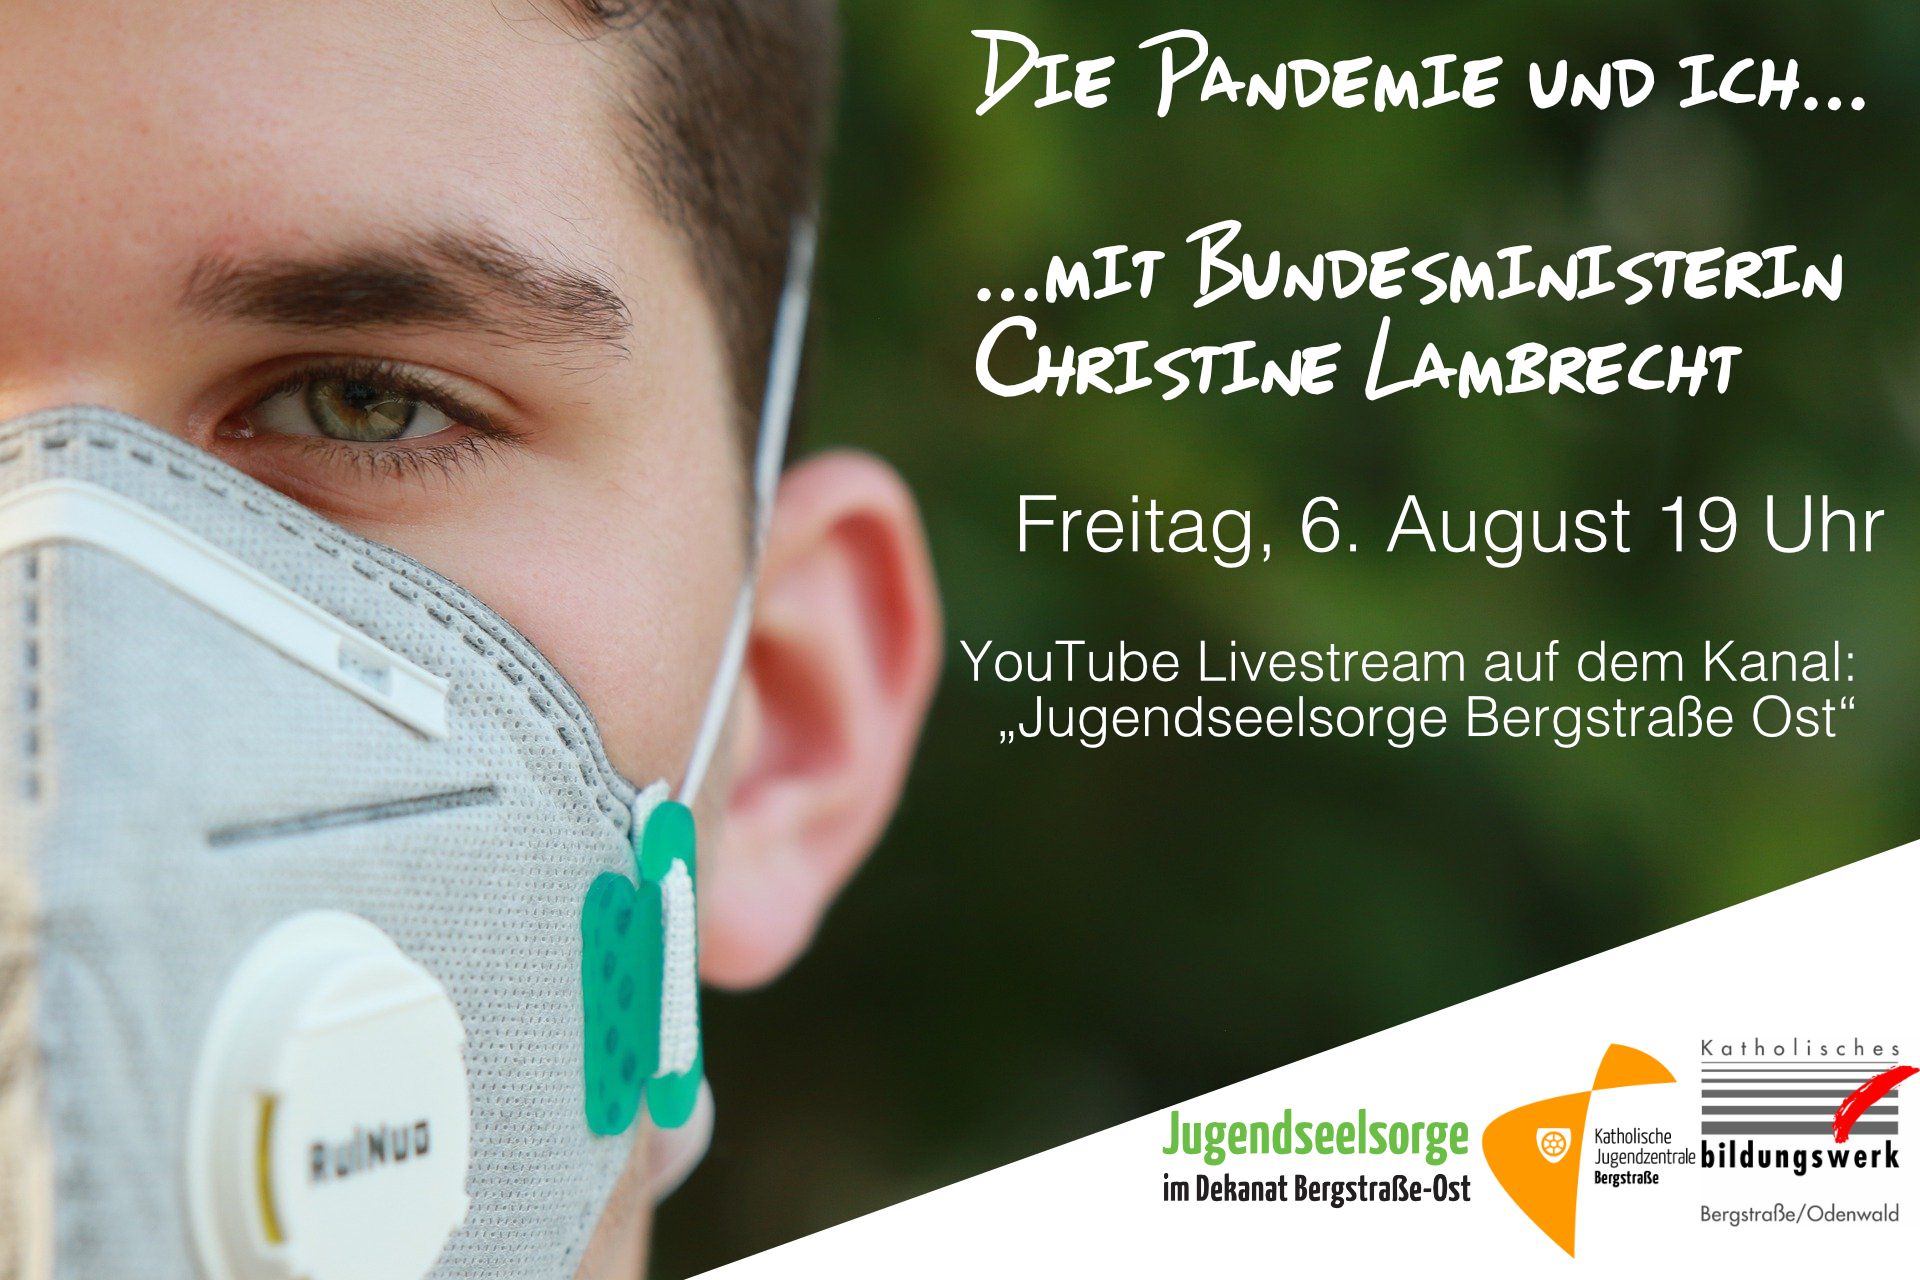 Die Pandemie und ich LA (c) Bistum Mainz